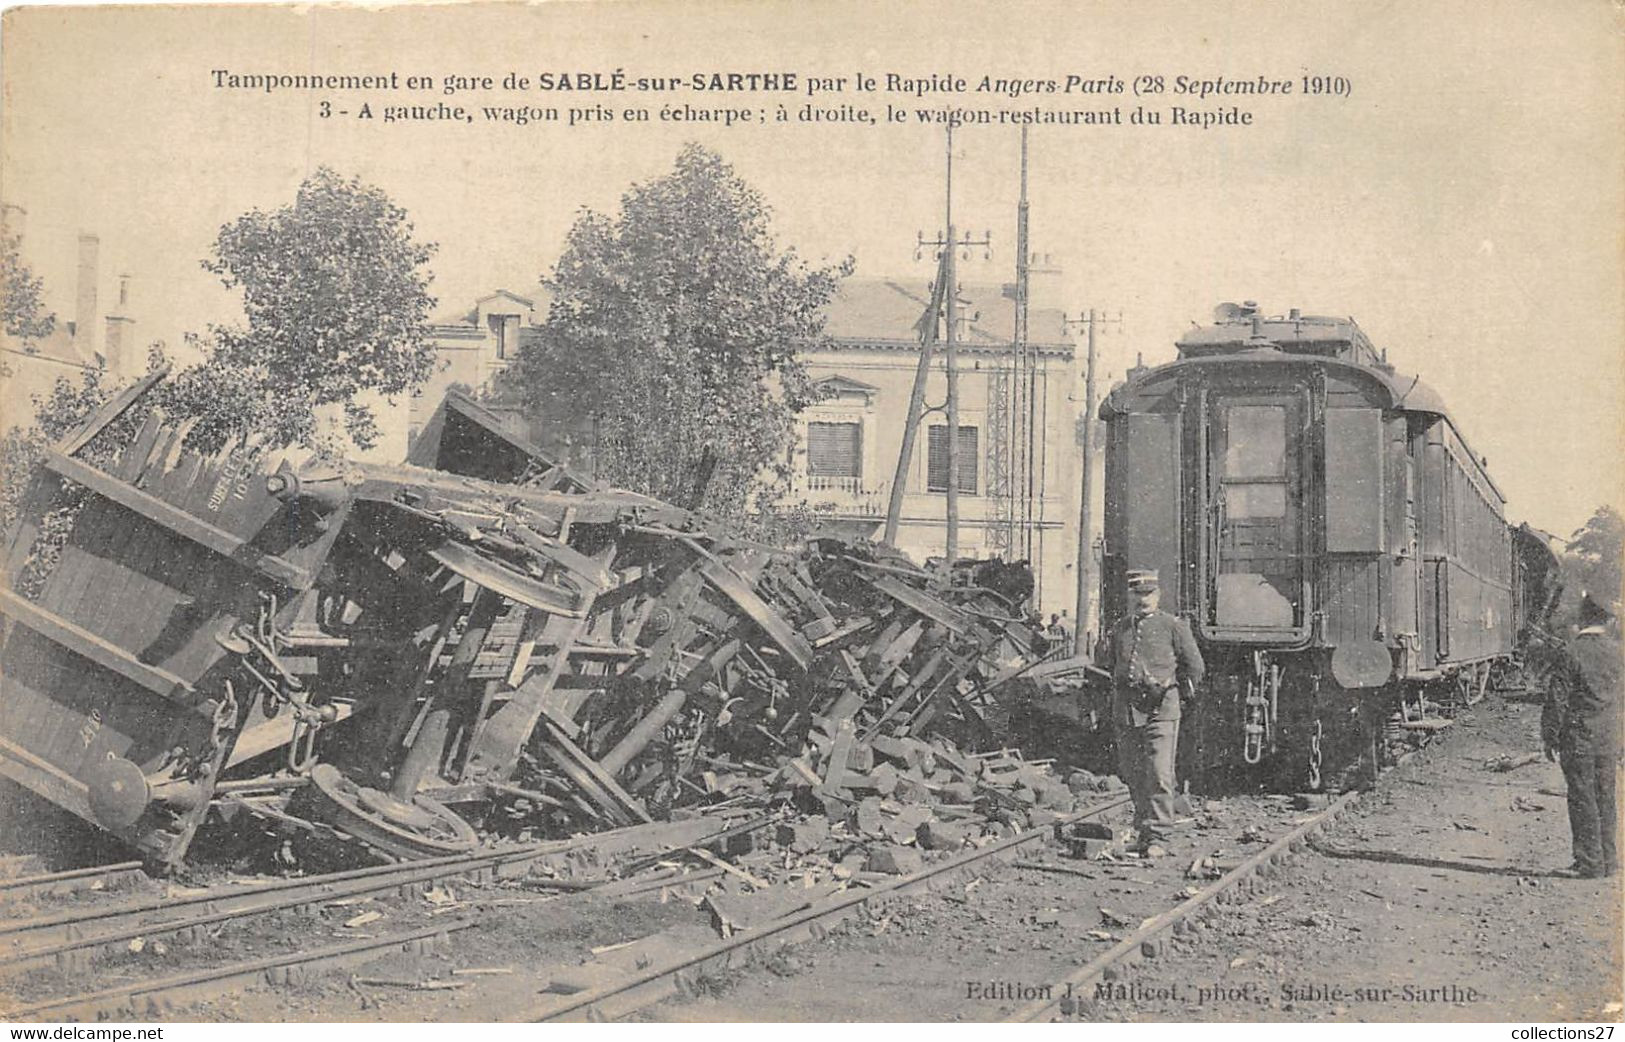 72-SABLE-SUR-SARTHE- TAMPONNEMENT EN GARE PAR LE RAPIDE ANGERS-PARIS 28 SEP 1910 - Sable Sur Sarthe